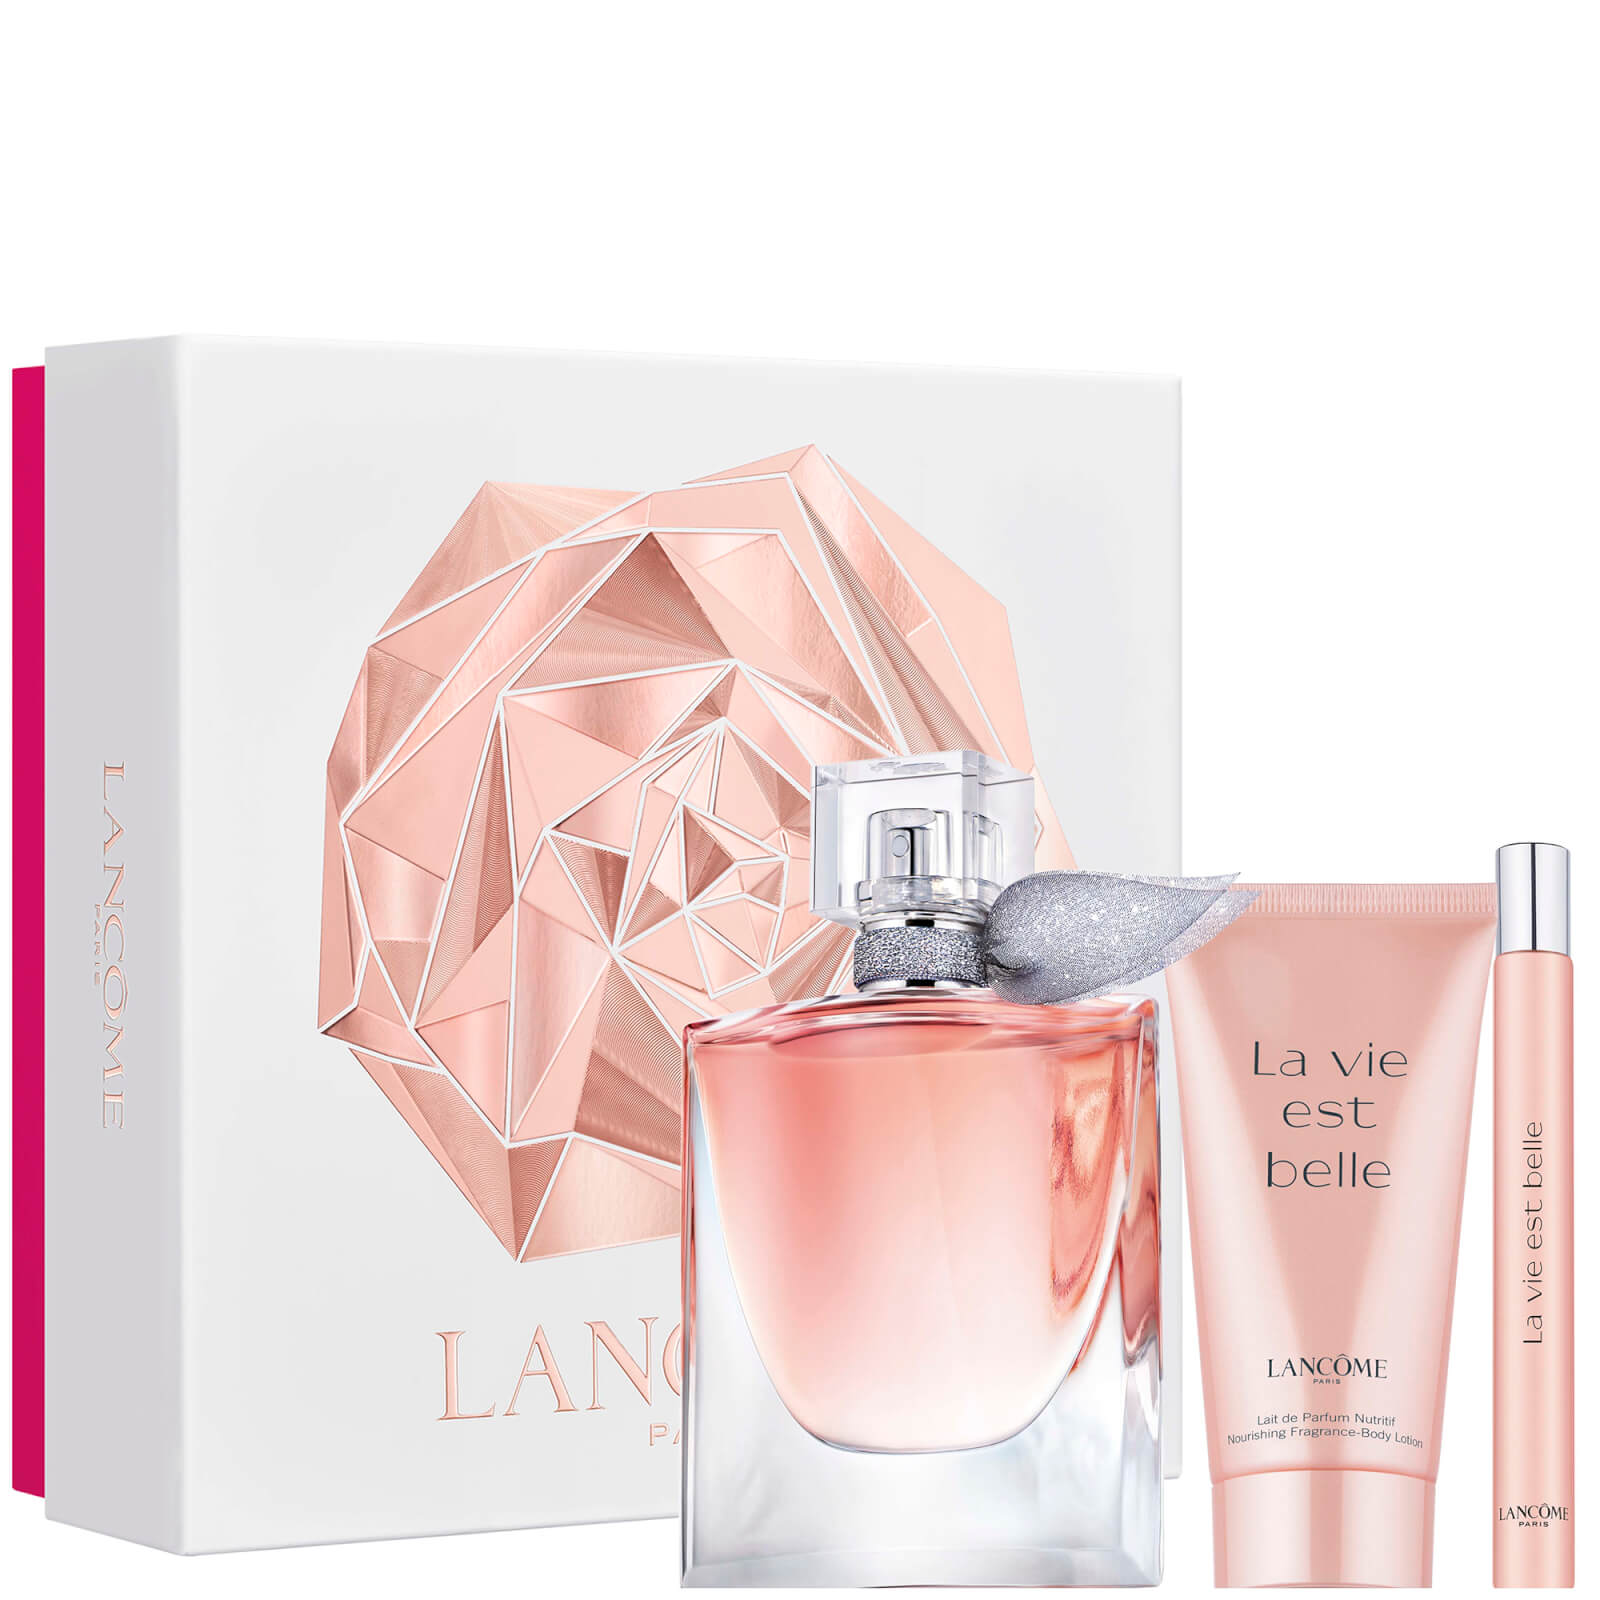 Lancôme La Vie Est Belle Eau De Parfum 50ml Holiday Gift Set For Her (Worth £110.00)